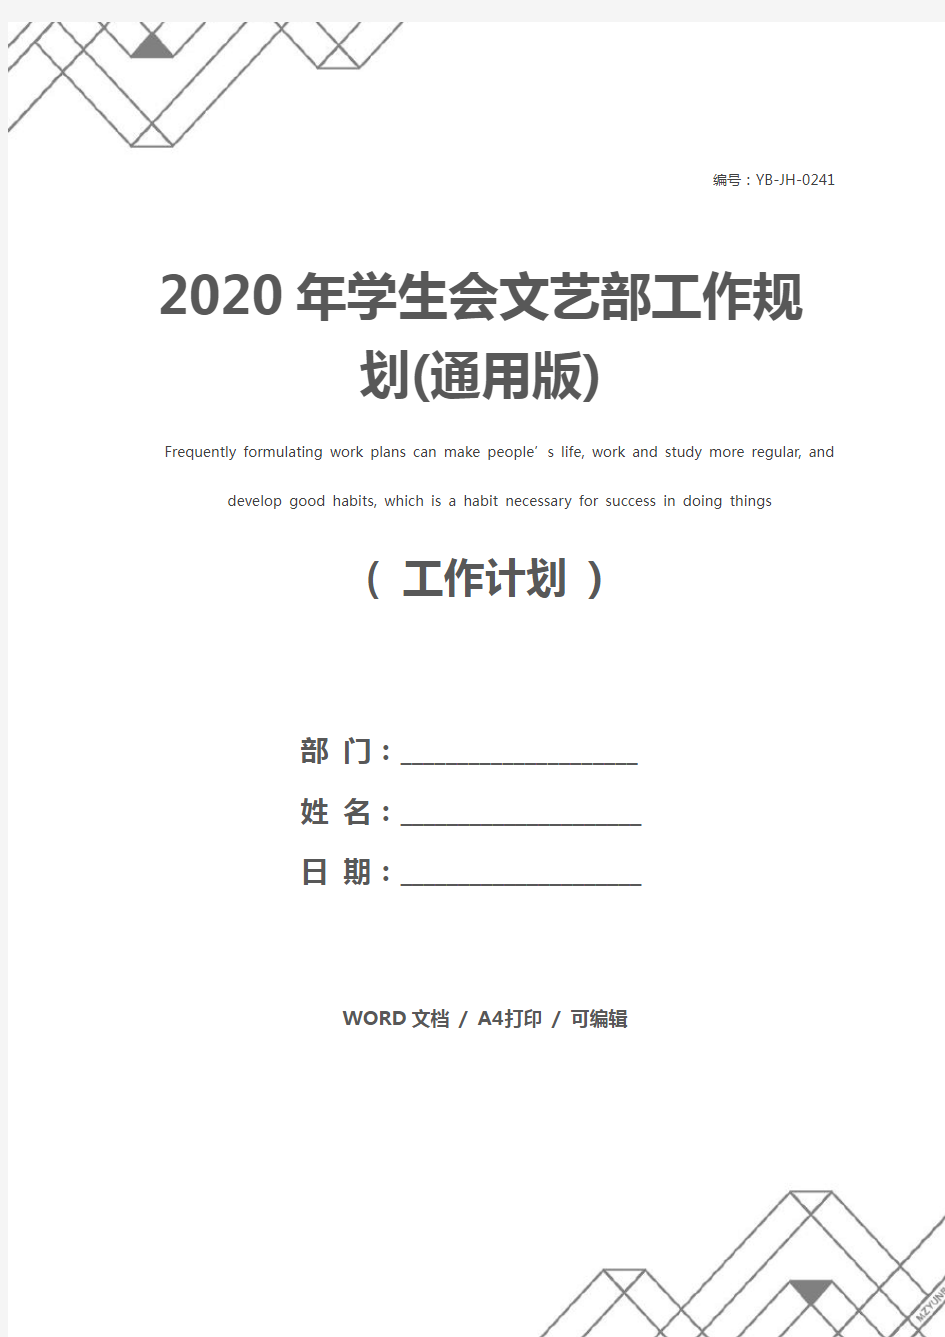 2020年学生会文艺部工作规划(通用版)